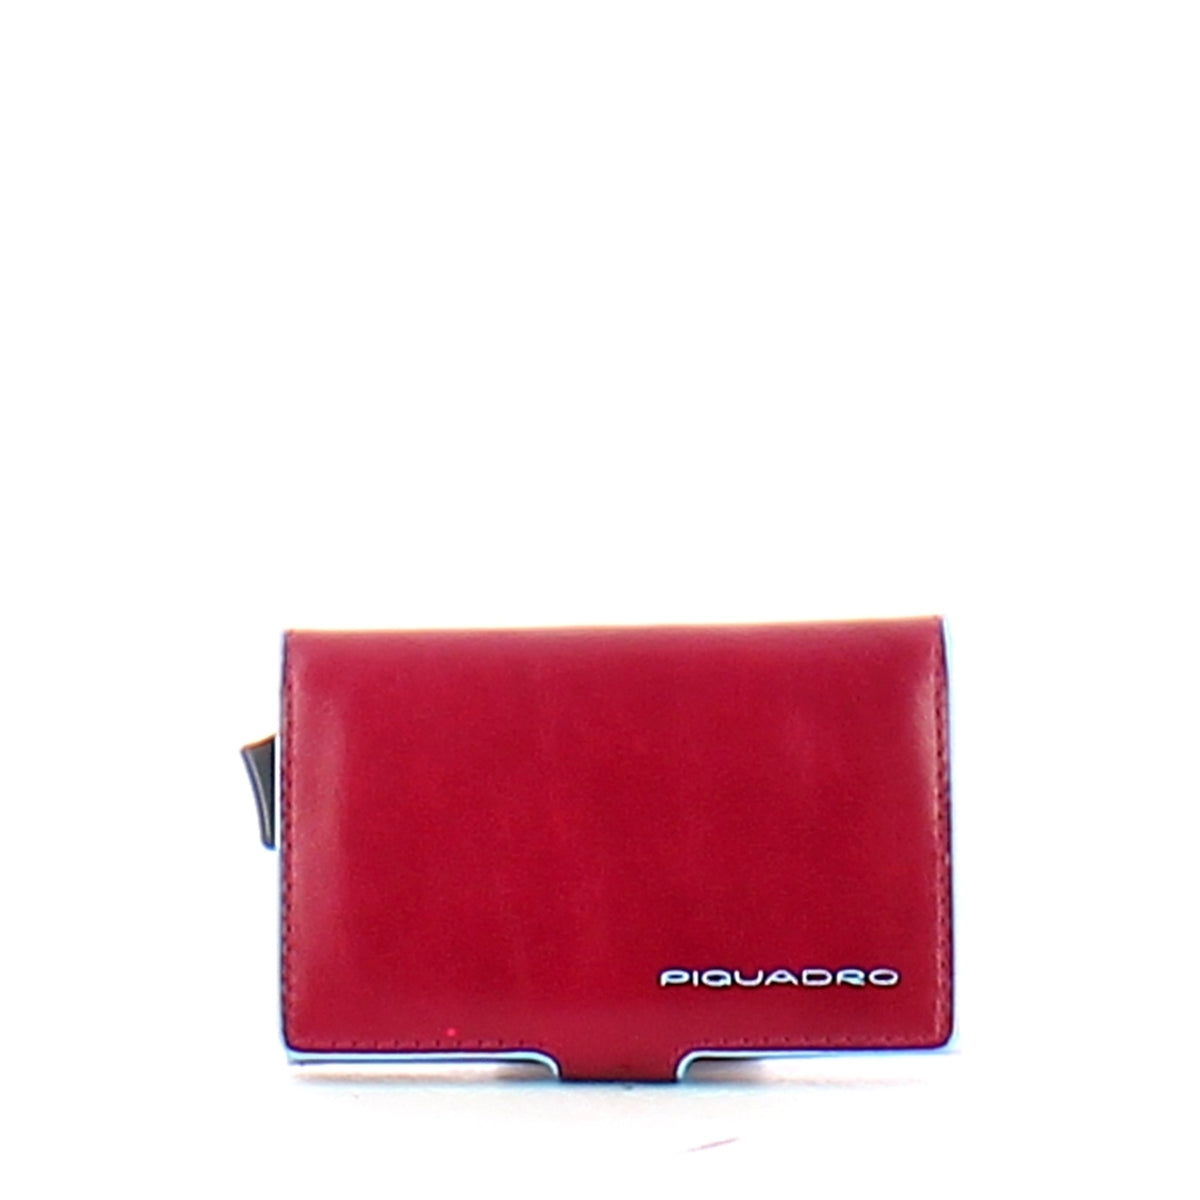 Piquadro - Porta carte di credito con Sliding System RFID Black Square - PP5649B2R - ROSSO